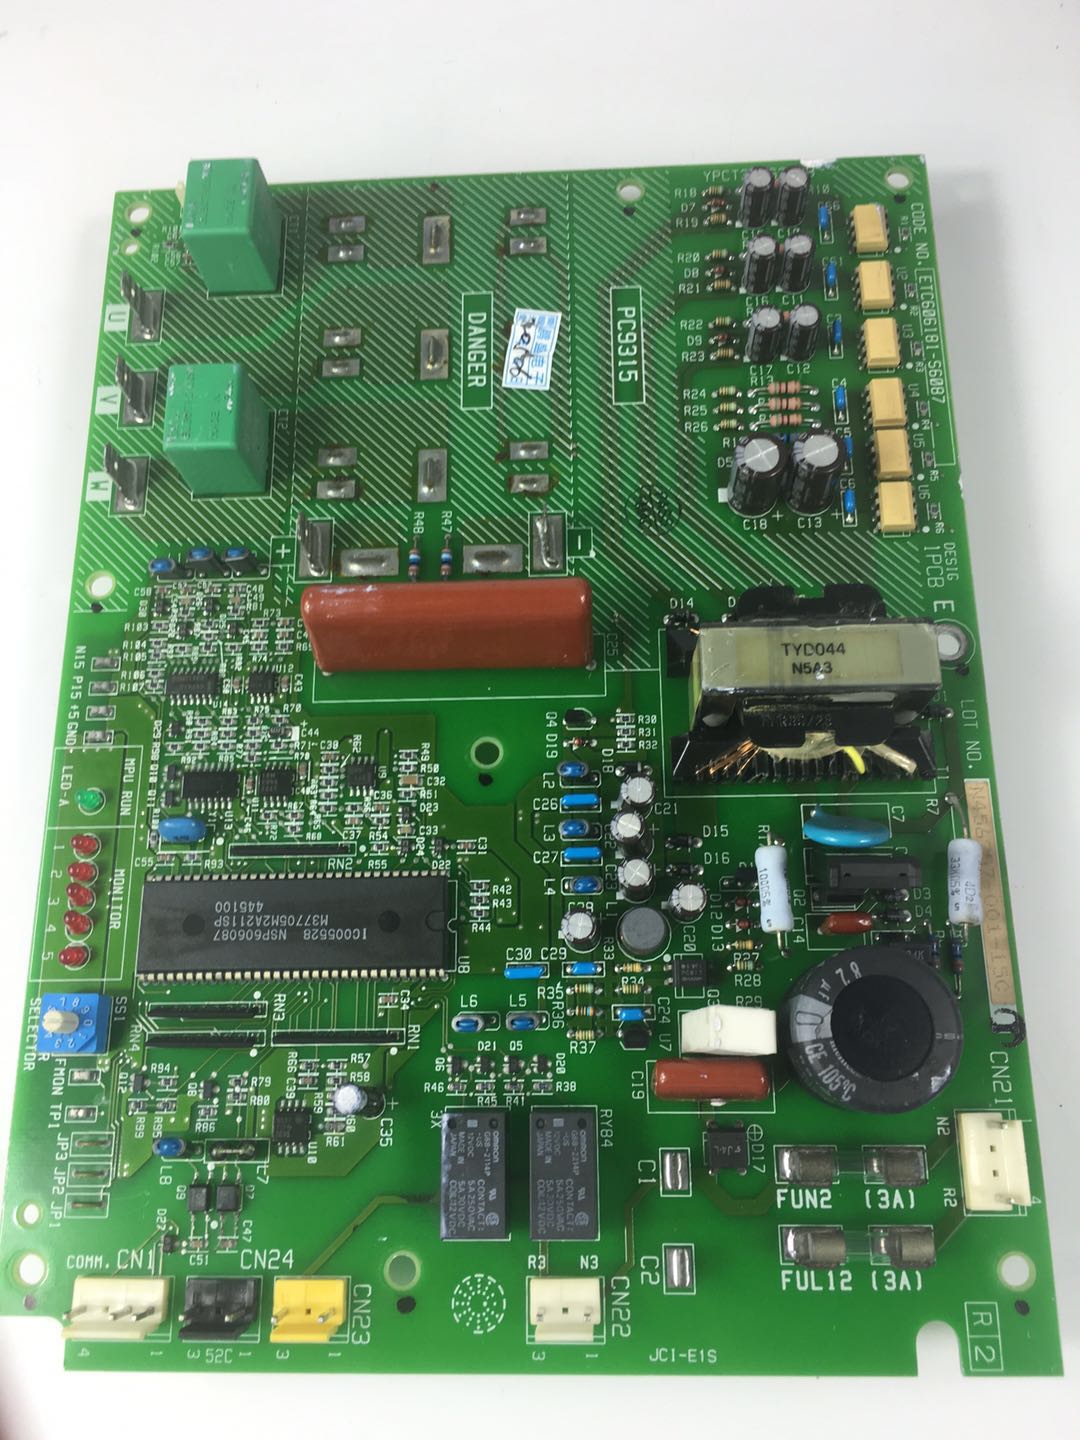 Inverter board for air conditioner (Spec: PC9315)